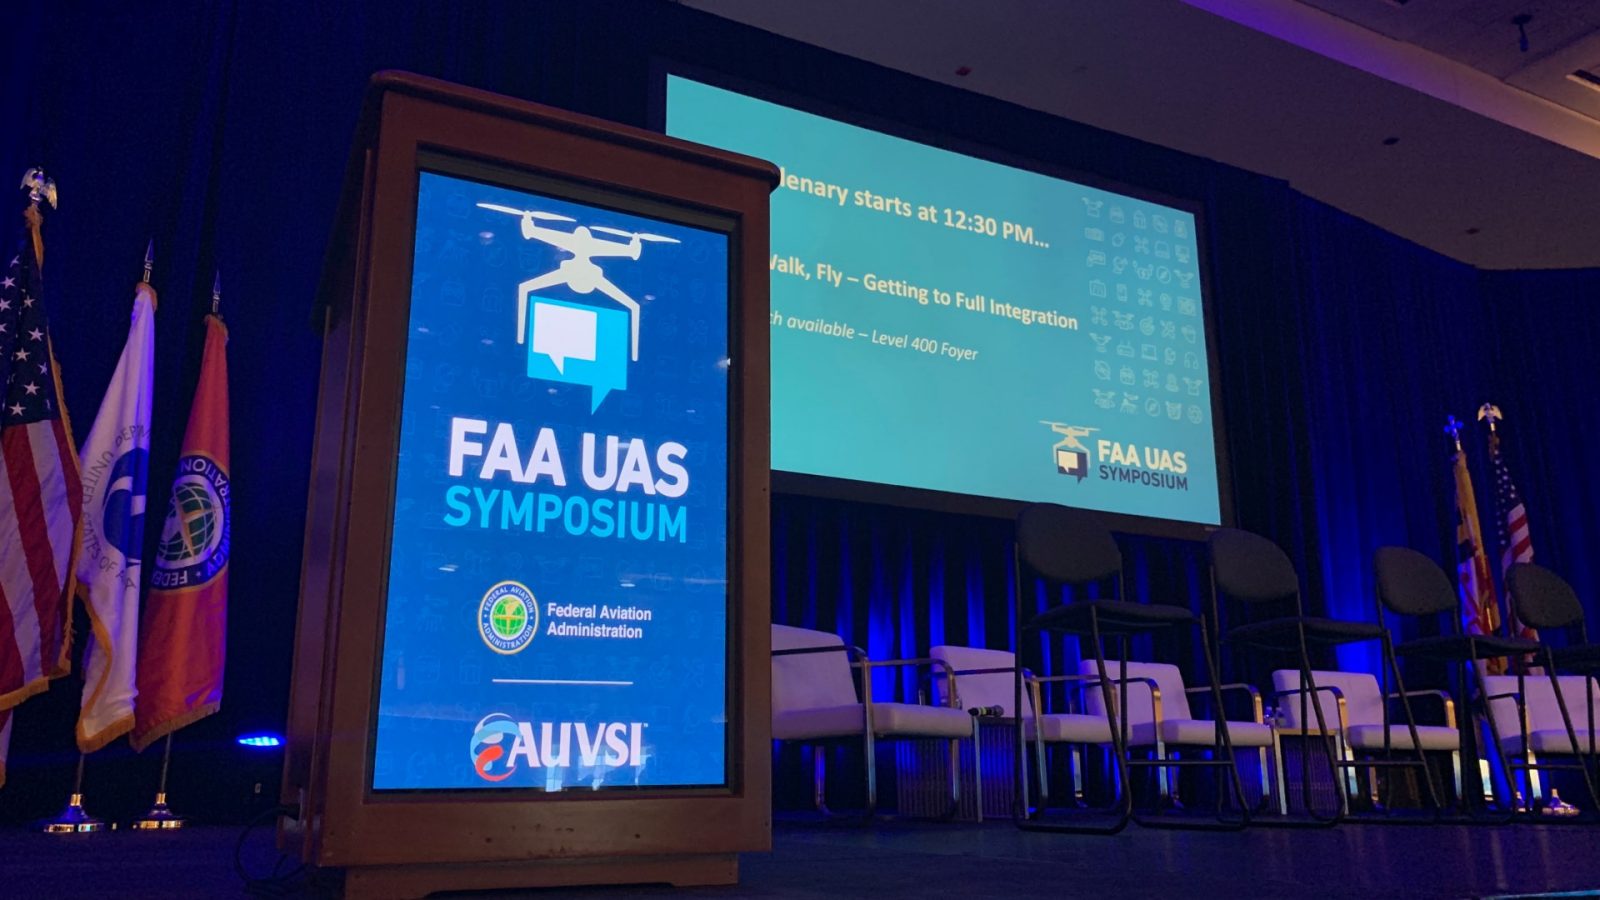 FAA Symposium 2019